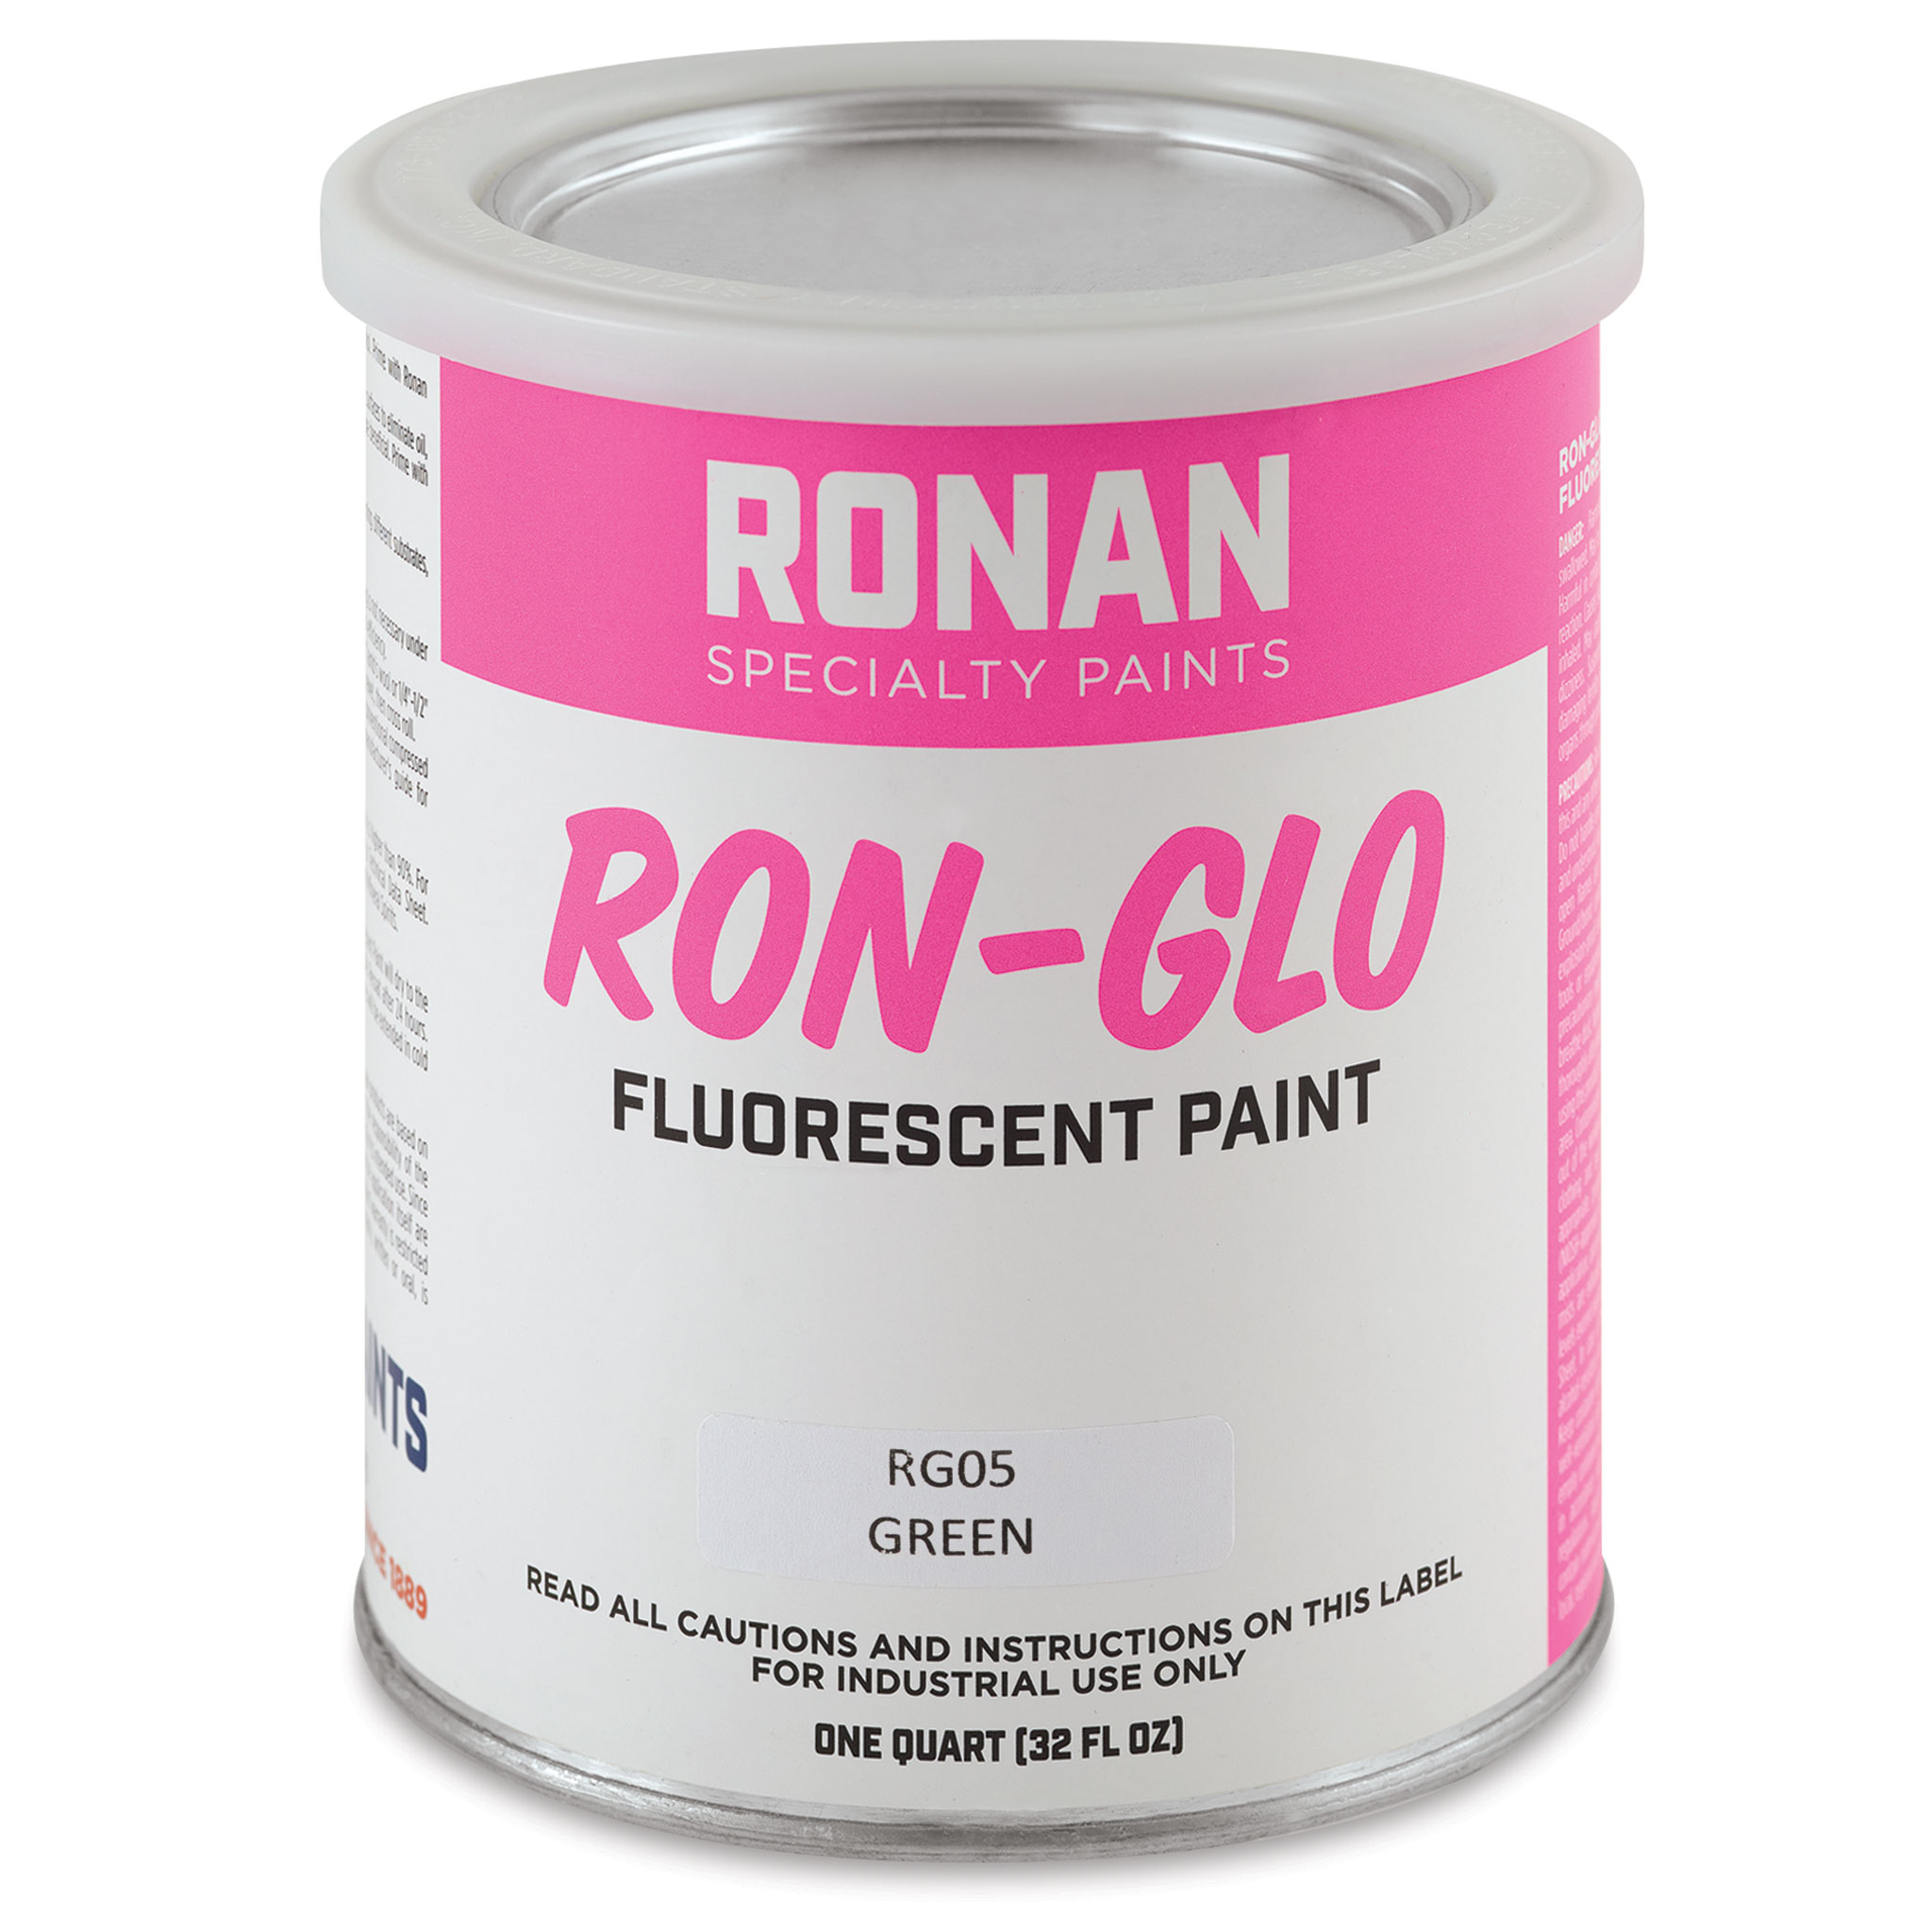 Ronan RON-GLO Fluorescent Paints